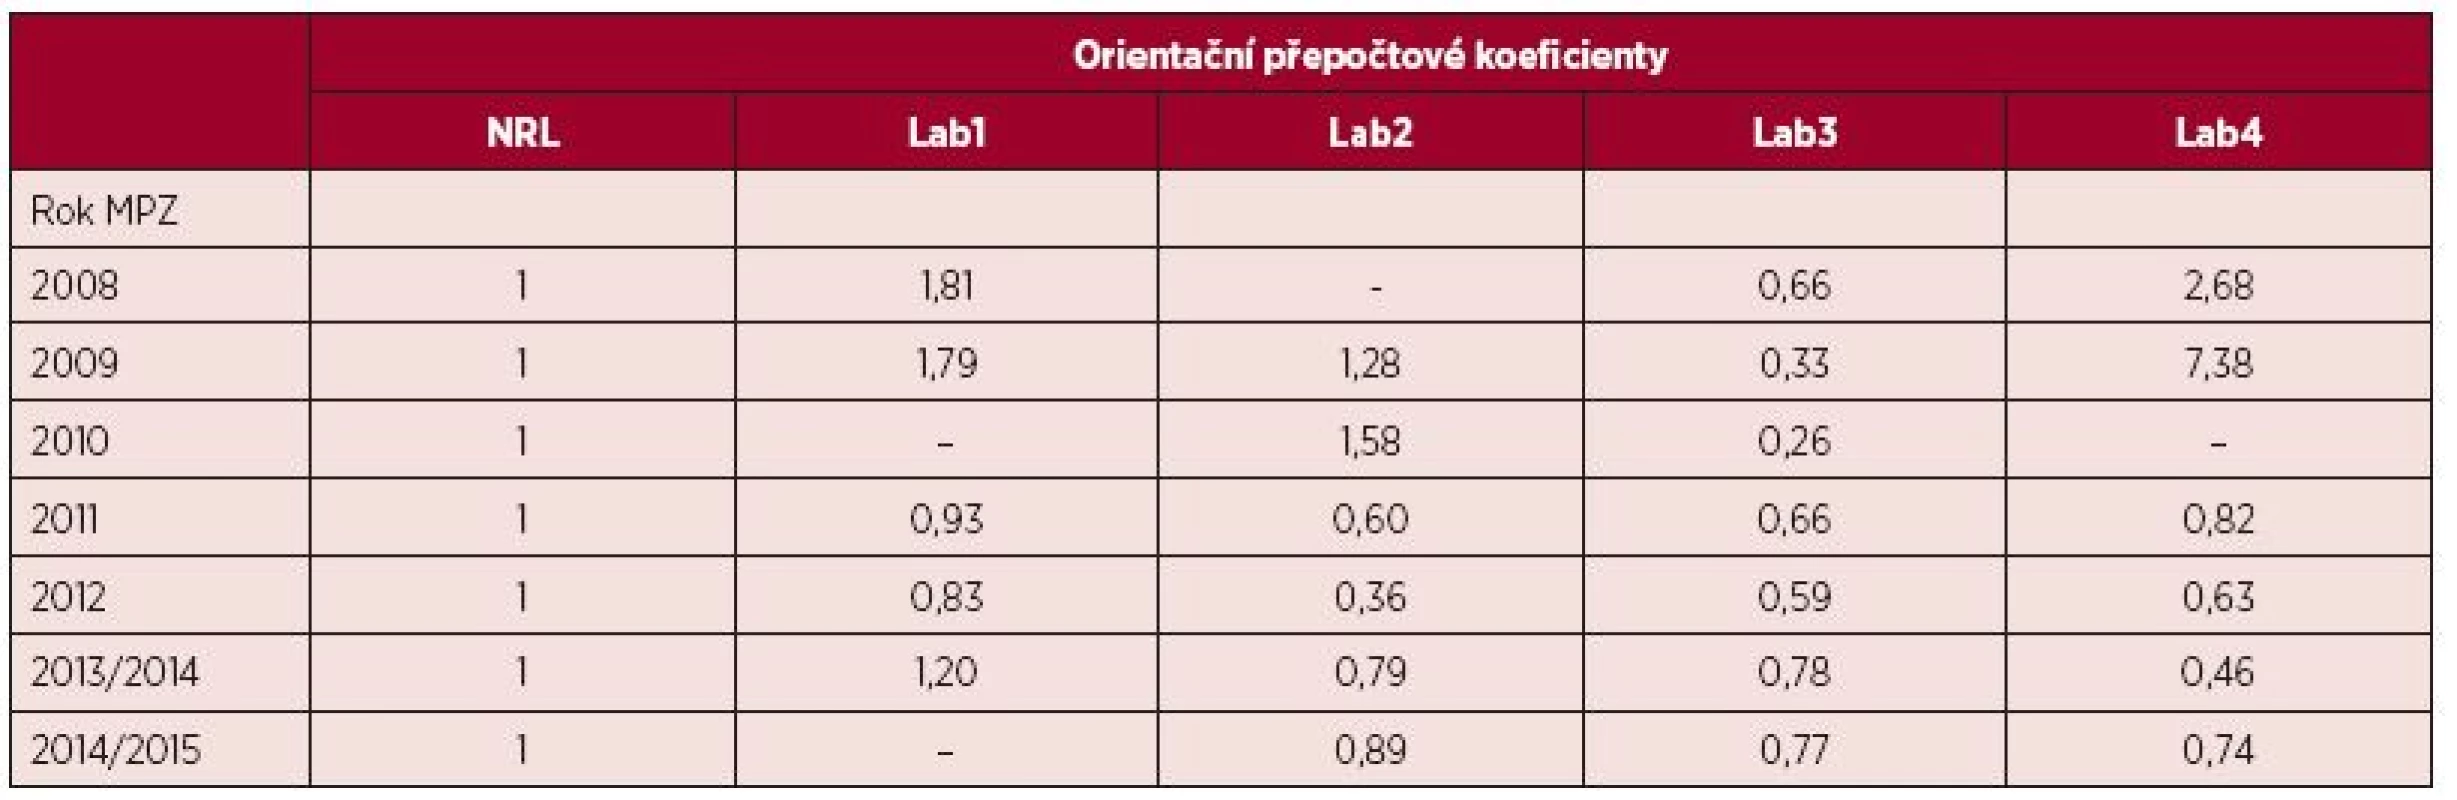 Orientační přepočtové koeficienty odrážející odchylku měření hladiny BCR-ABL1 transkriptů testovaných laboratoří od NRL